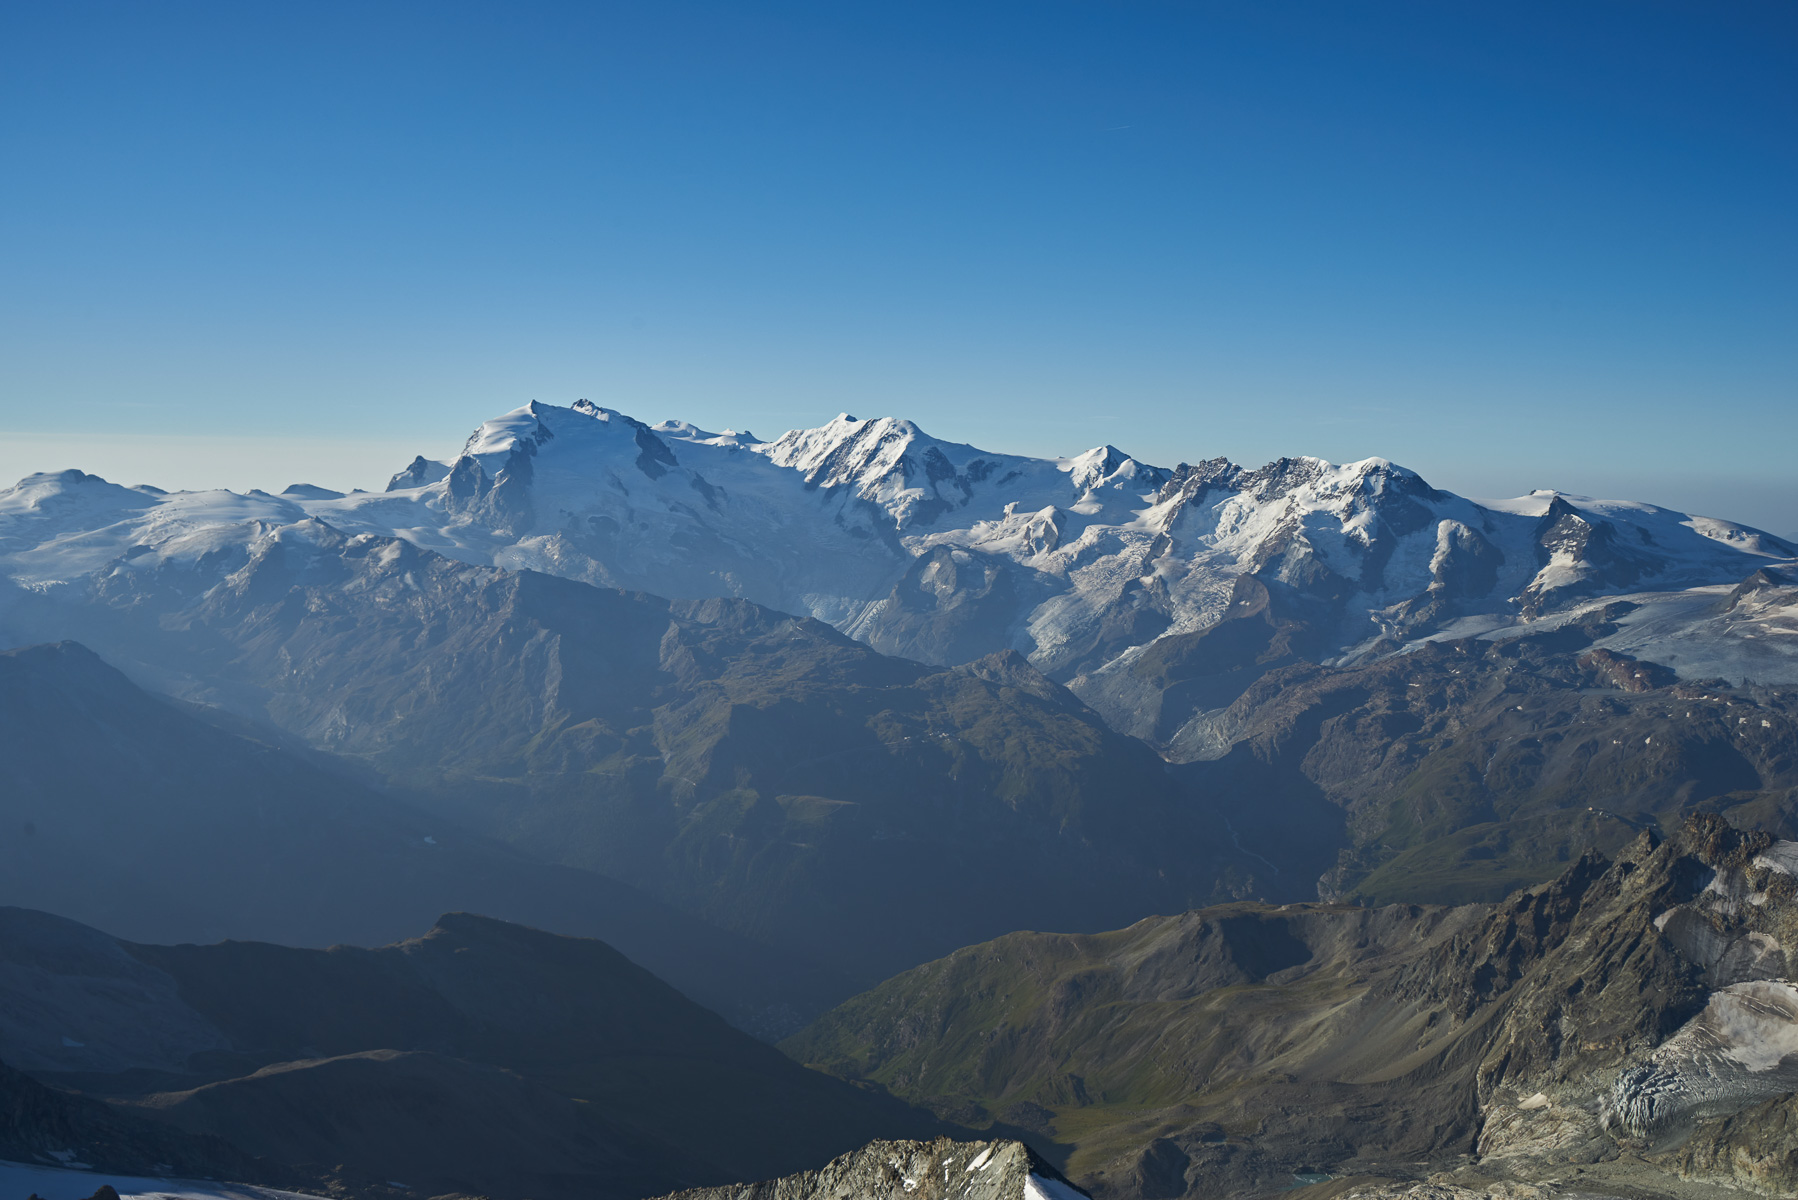 Blick zu Monte Rosa, Liskamm, Castor, Pollux und Breithorn.